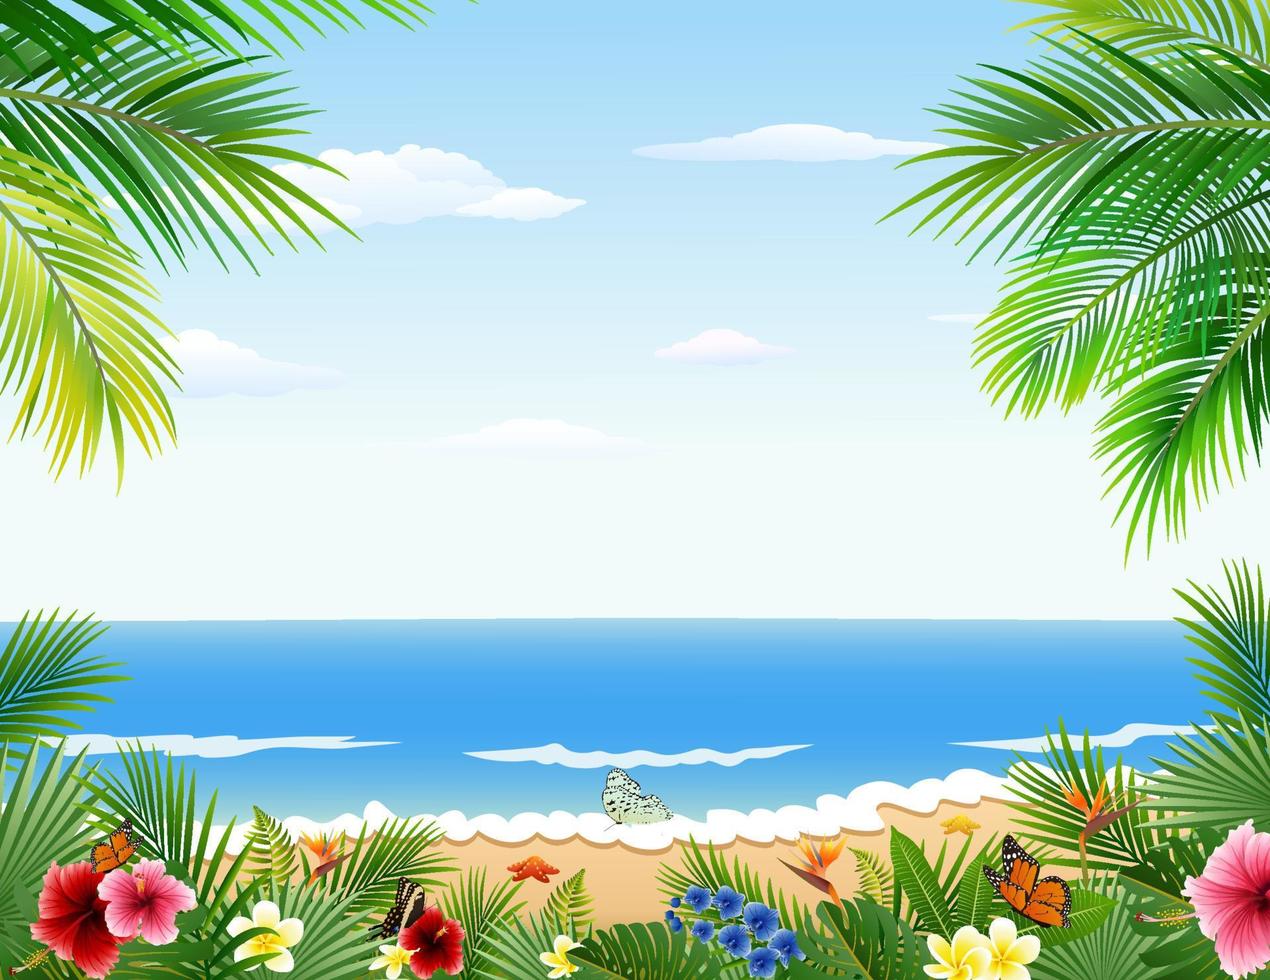 Beautiful tropical beach vector